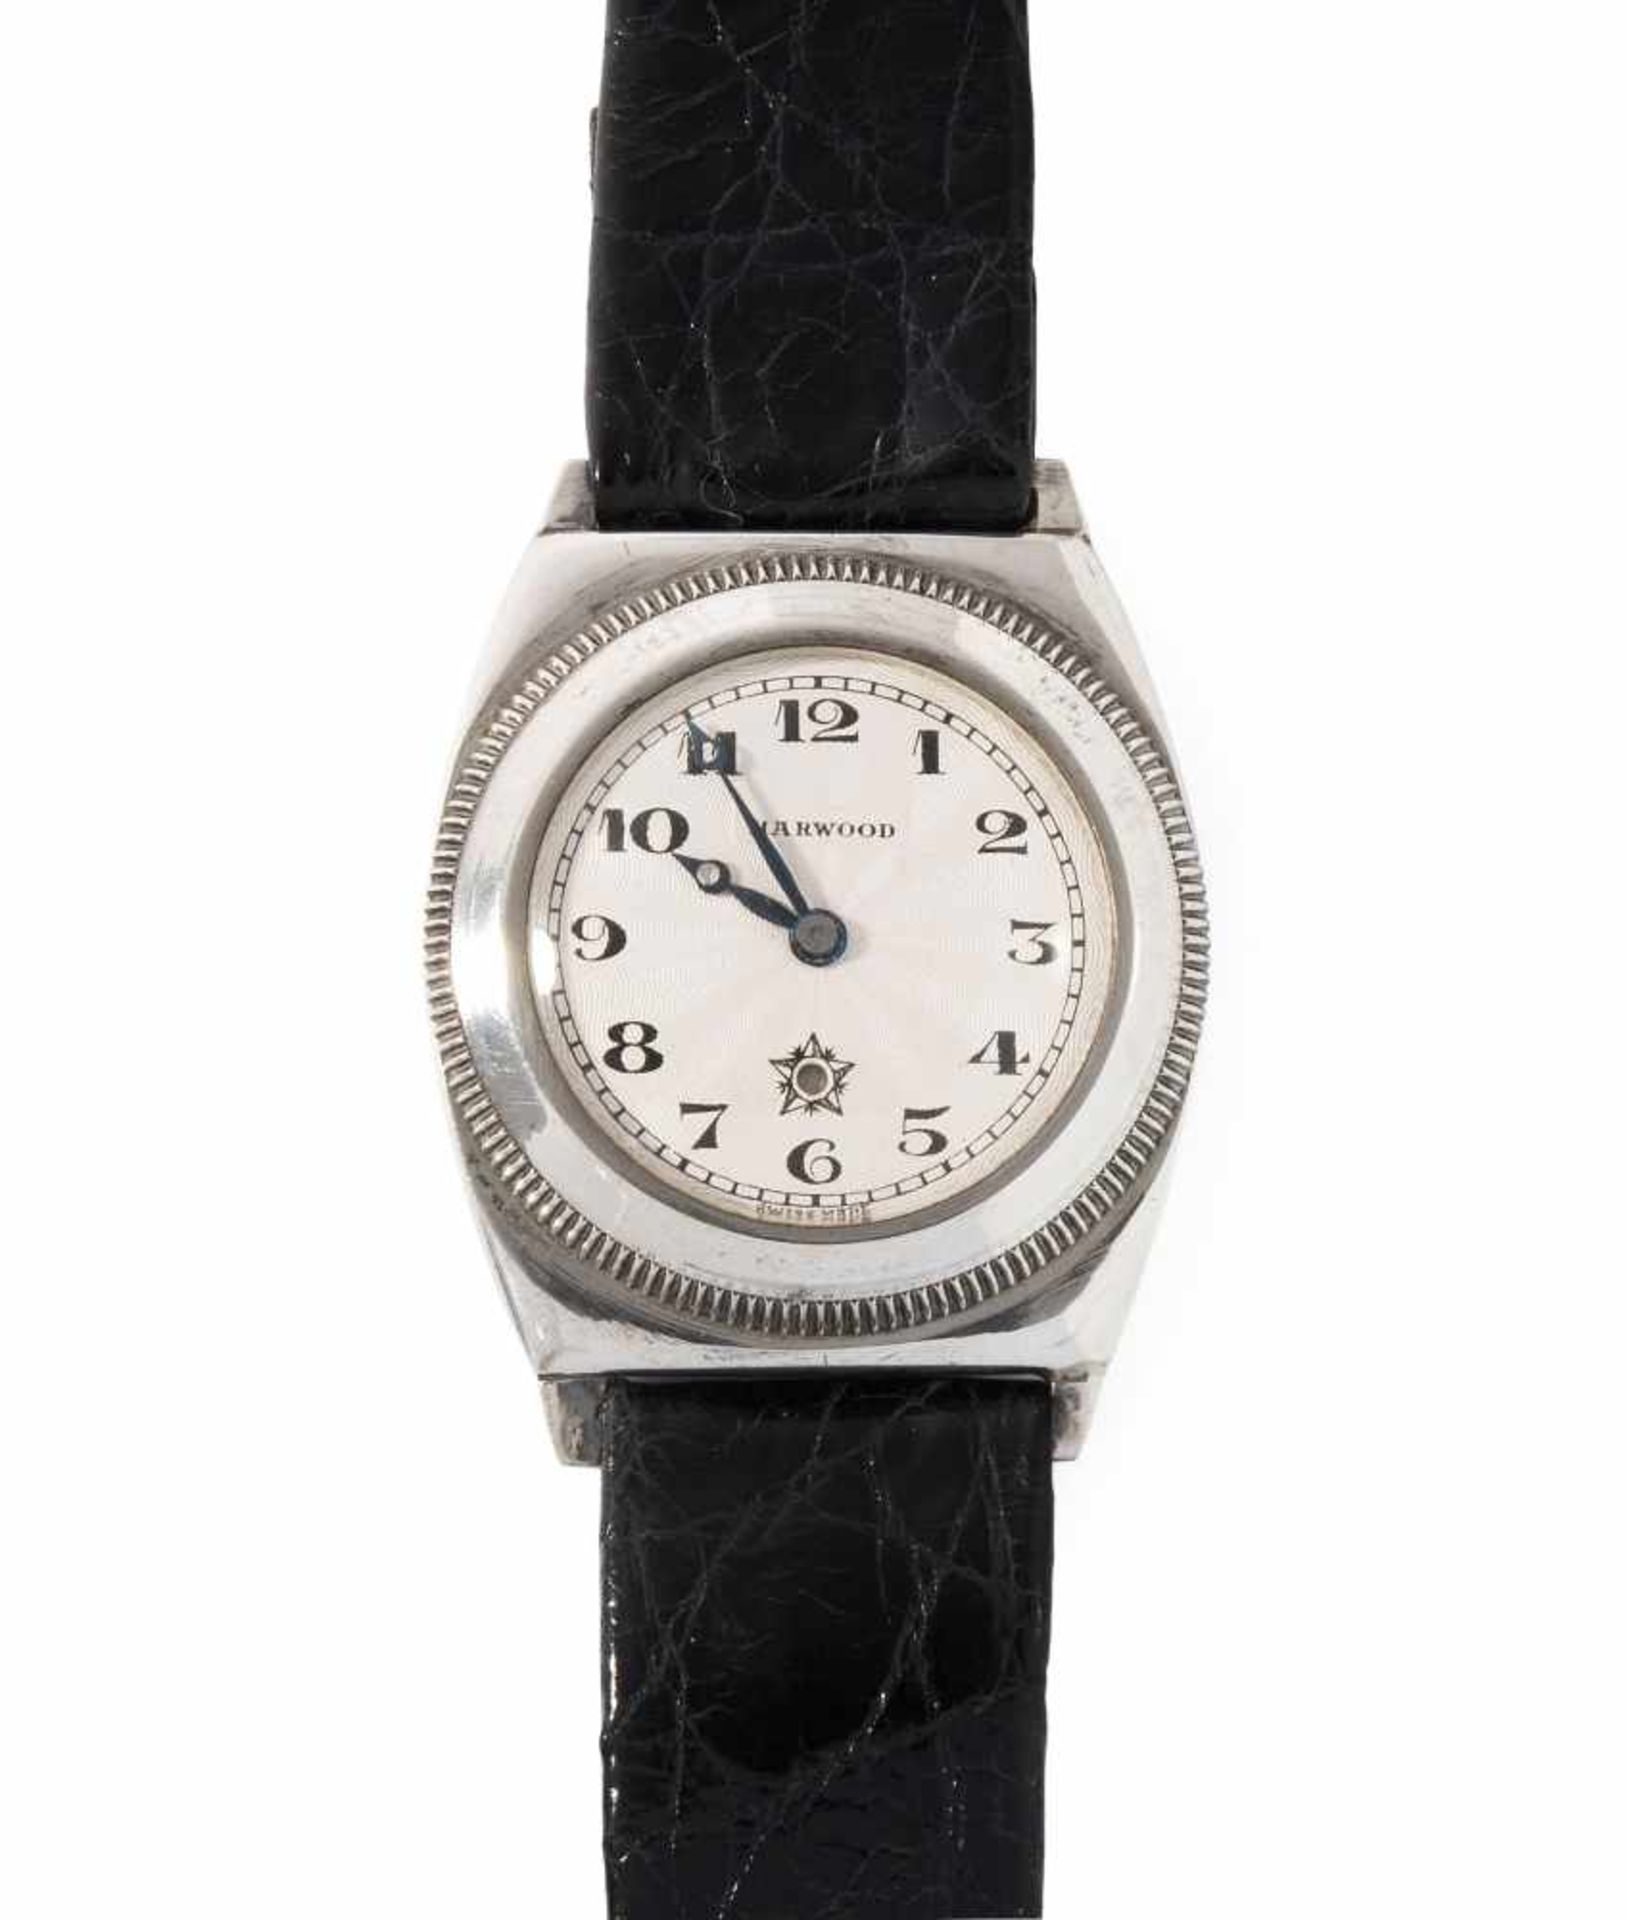 HarwoodRunde, automatische Armbanduhr 50er Jahre mit Hammerautomatik in tonneauförmigem